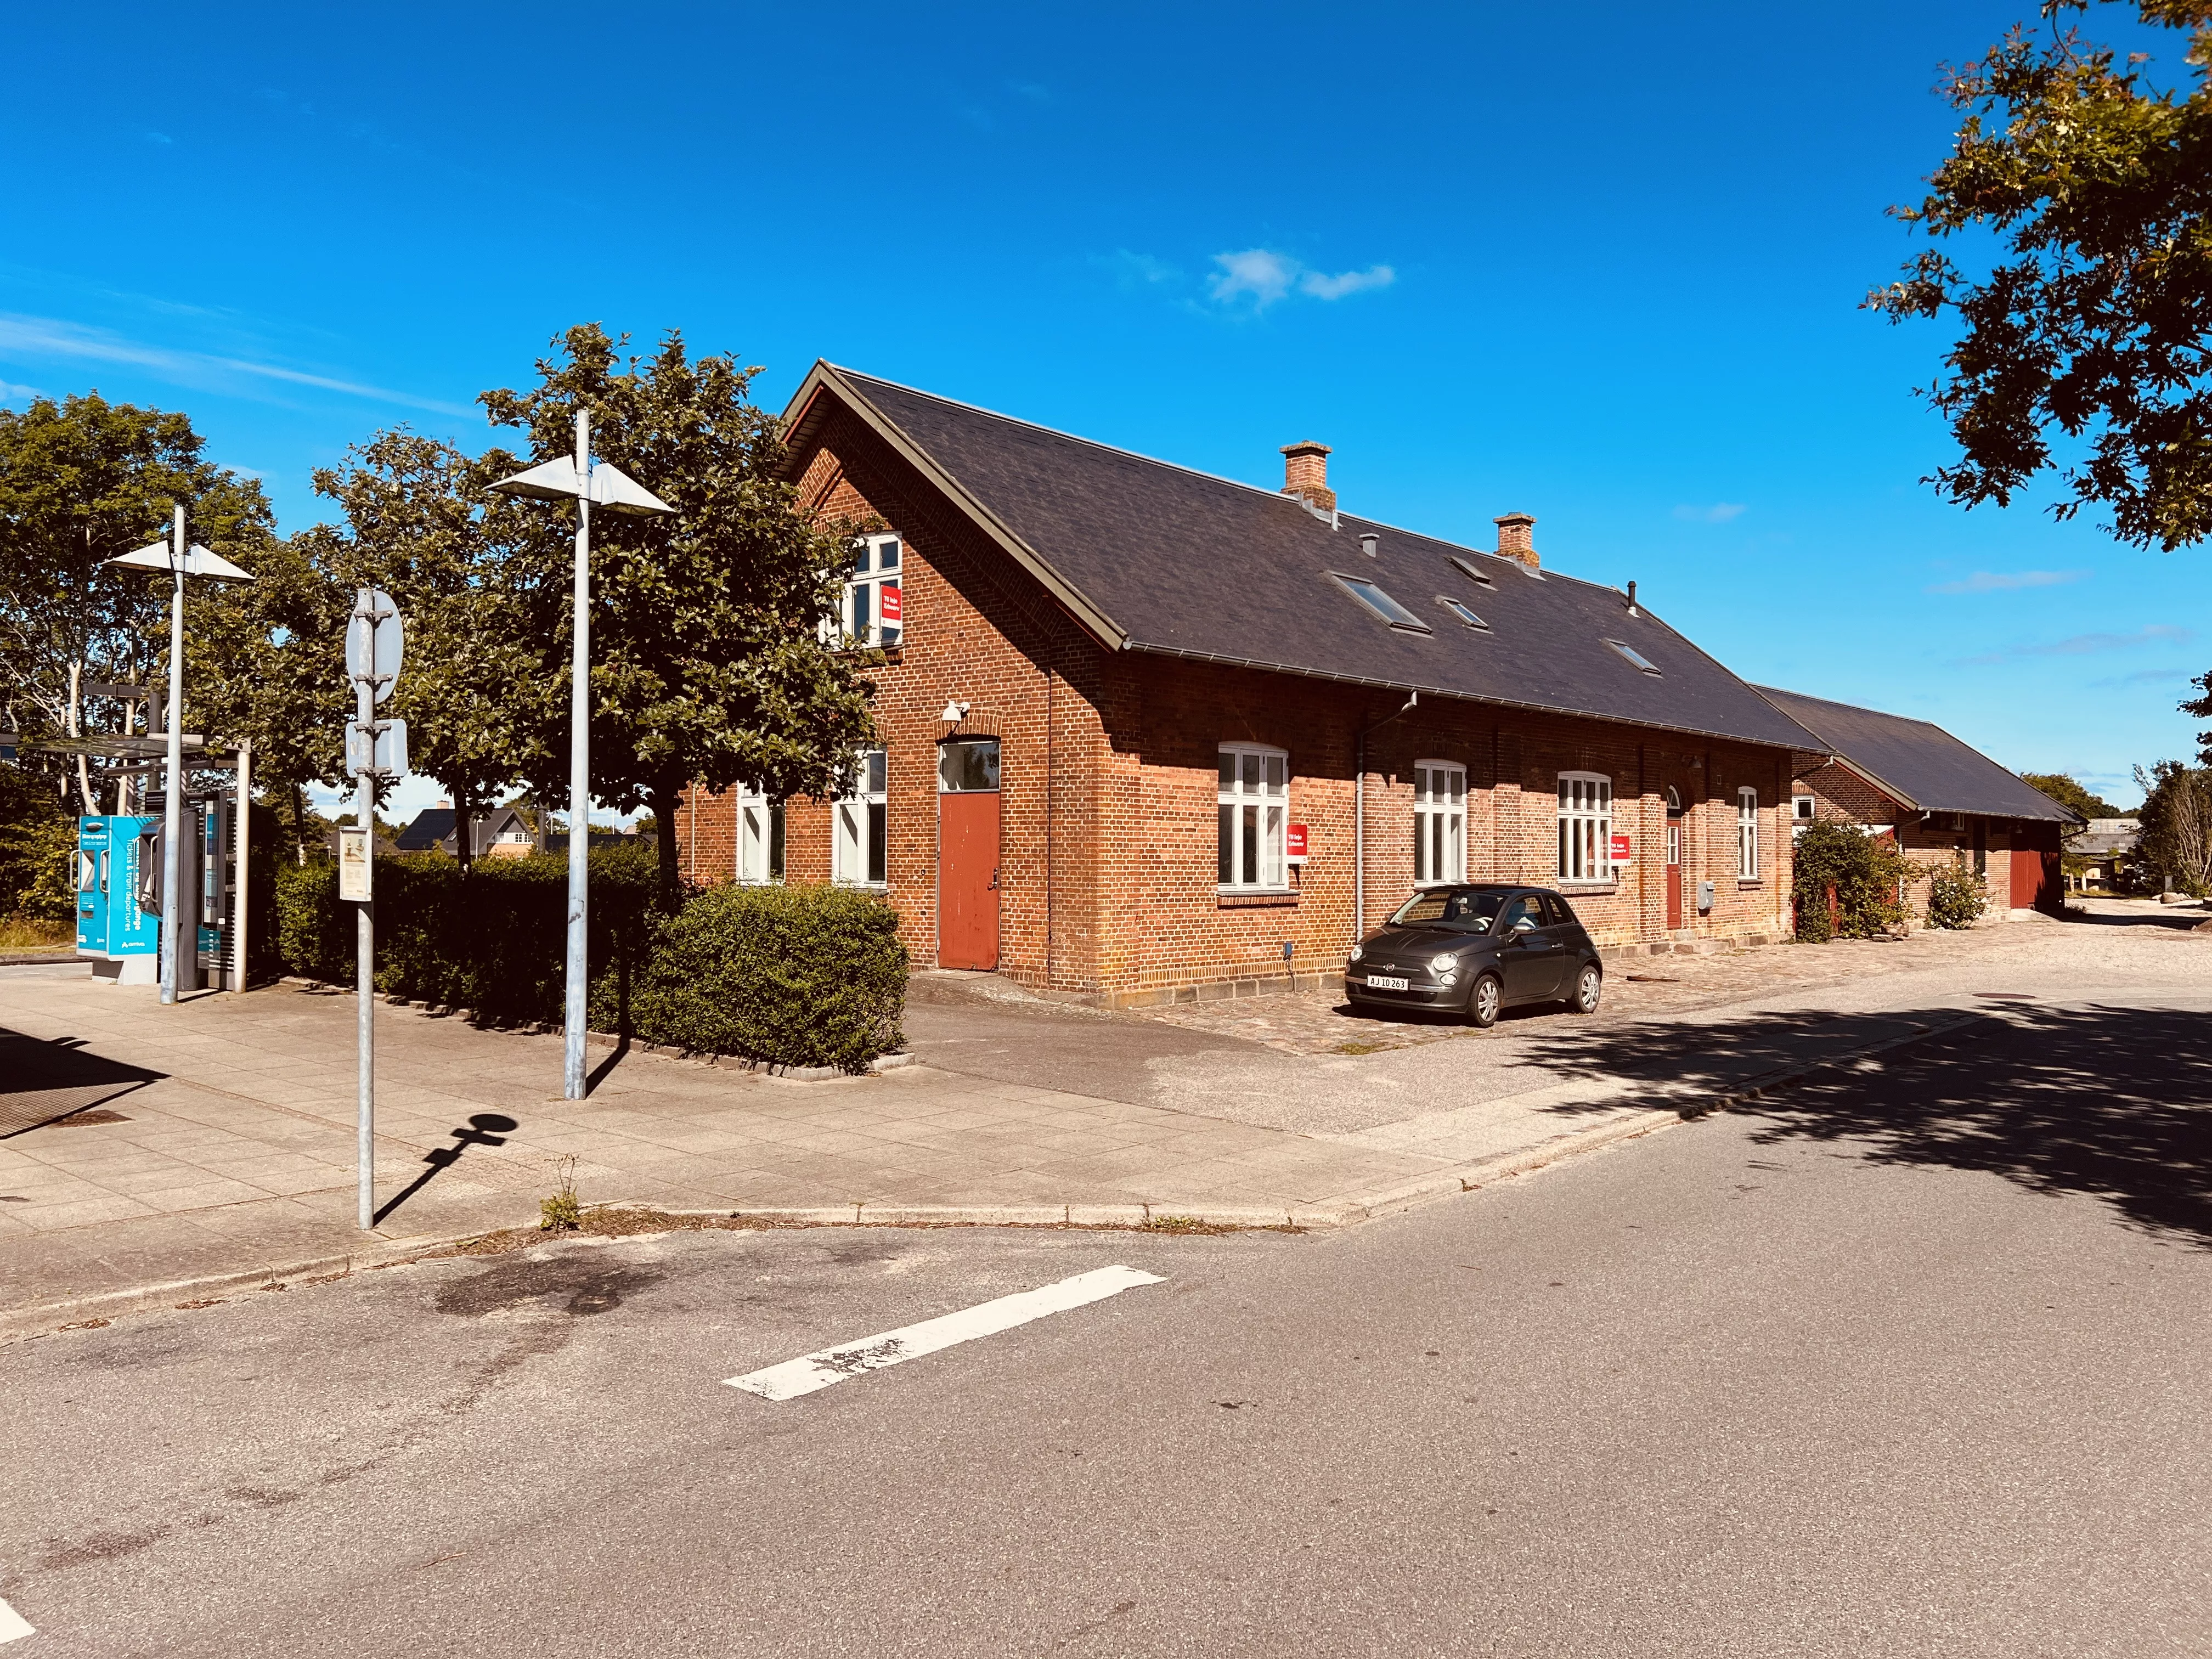 Billede af Gredstedbro Station.